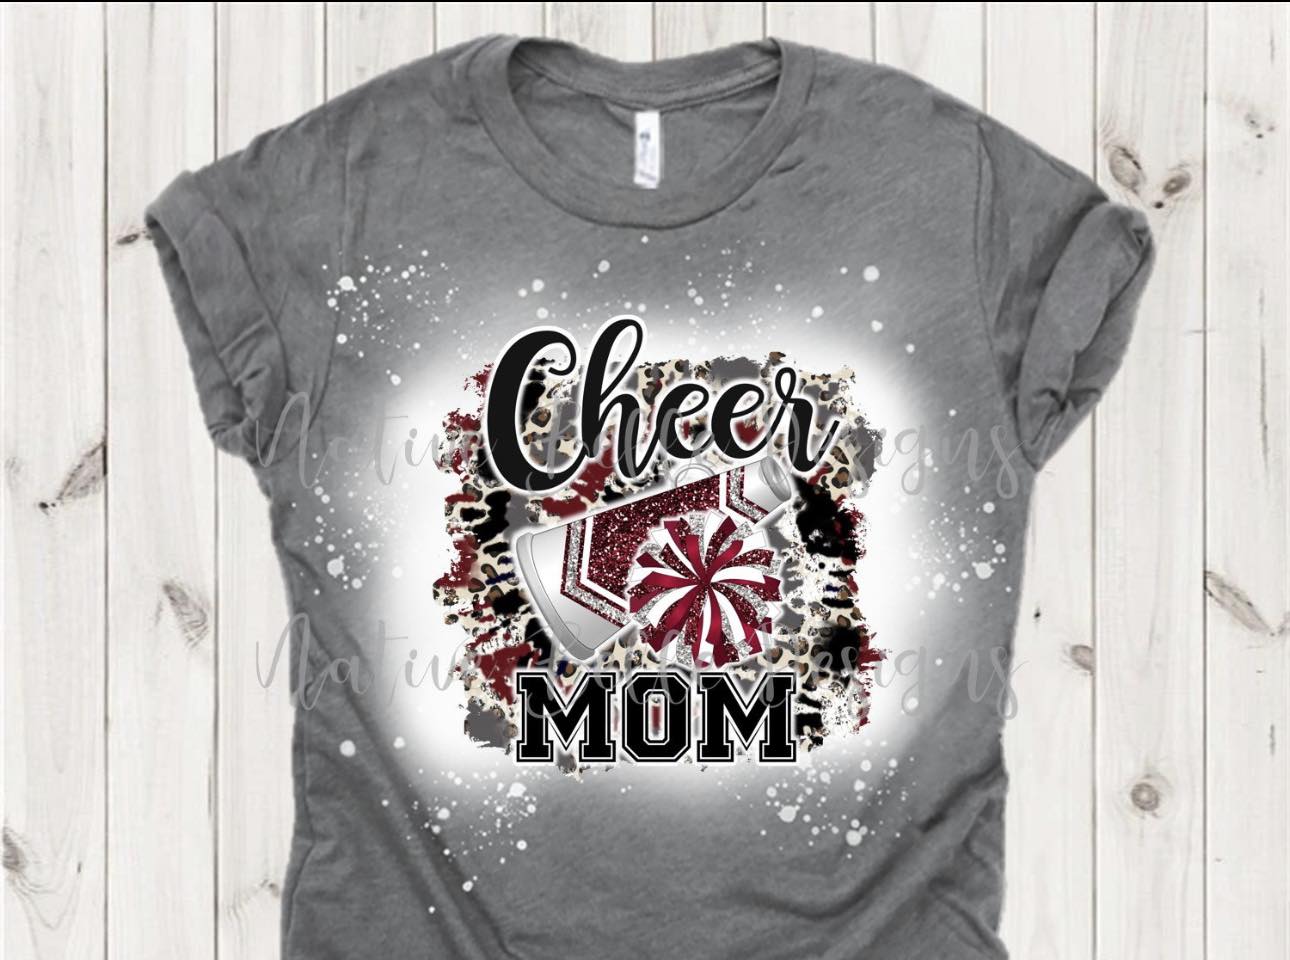 Cheer MOM/LIFE/Coach Tee